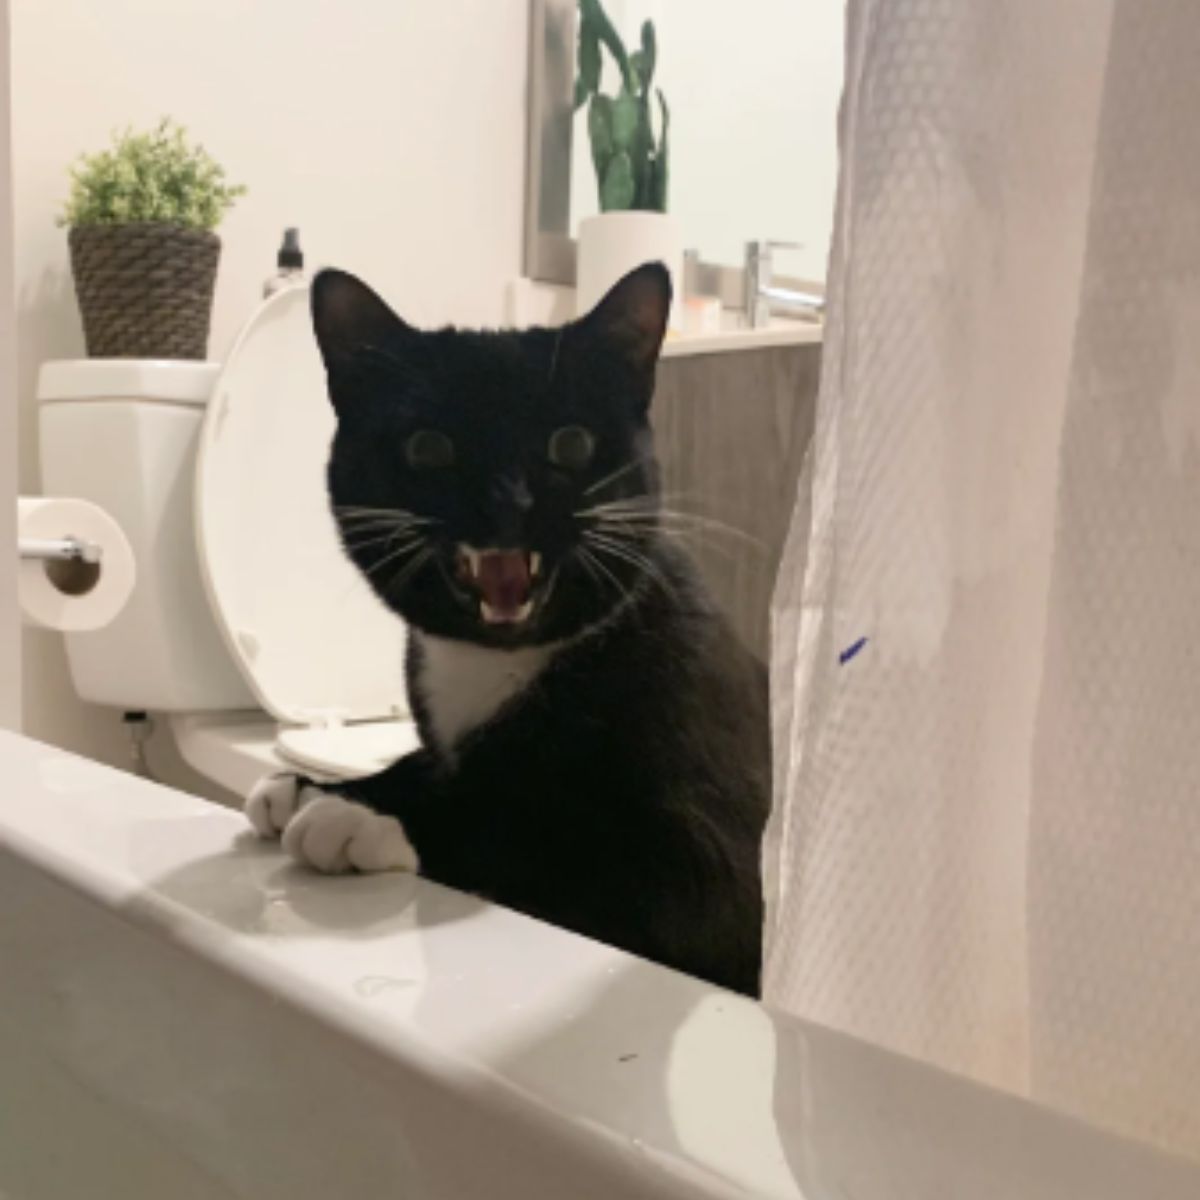 cat surprised in the bathroom